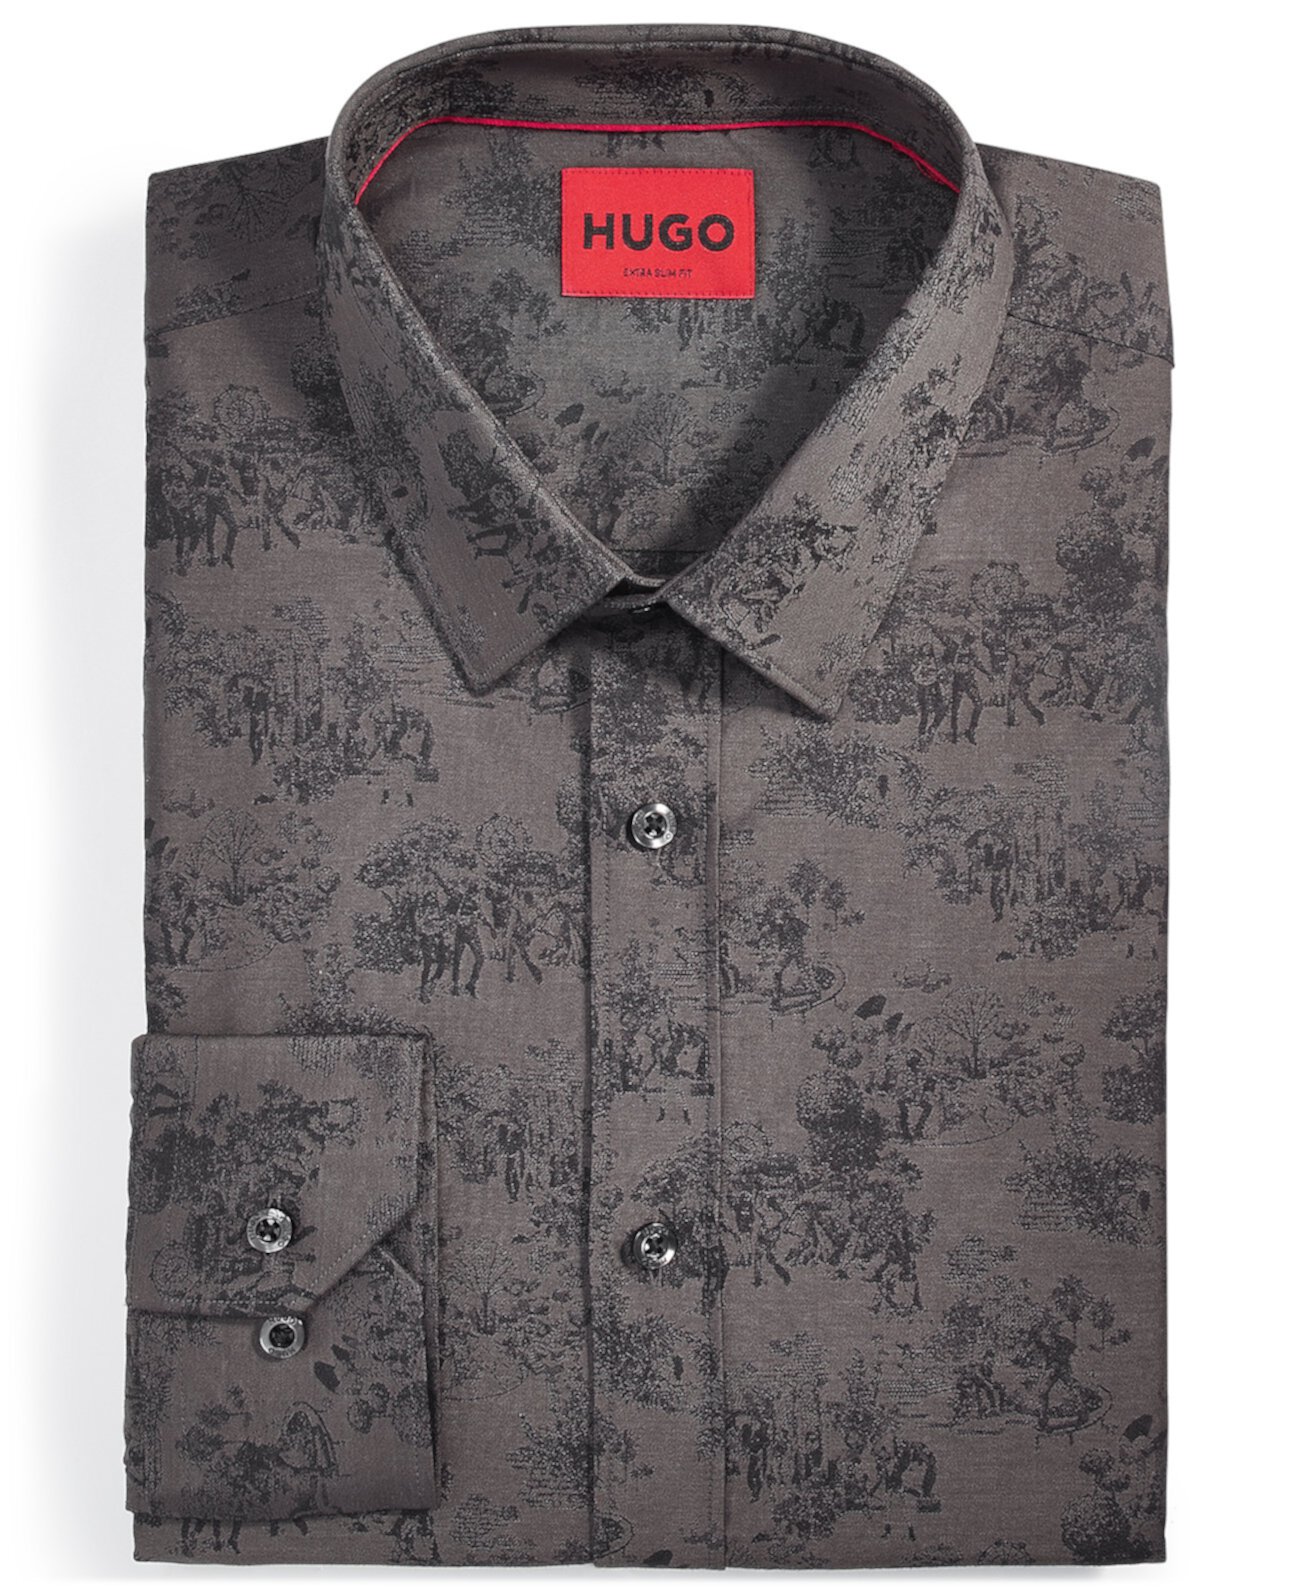 Мужская классическая рубашка Elisha Extra Slim с цветочным принтом HUGO BOSS